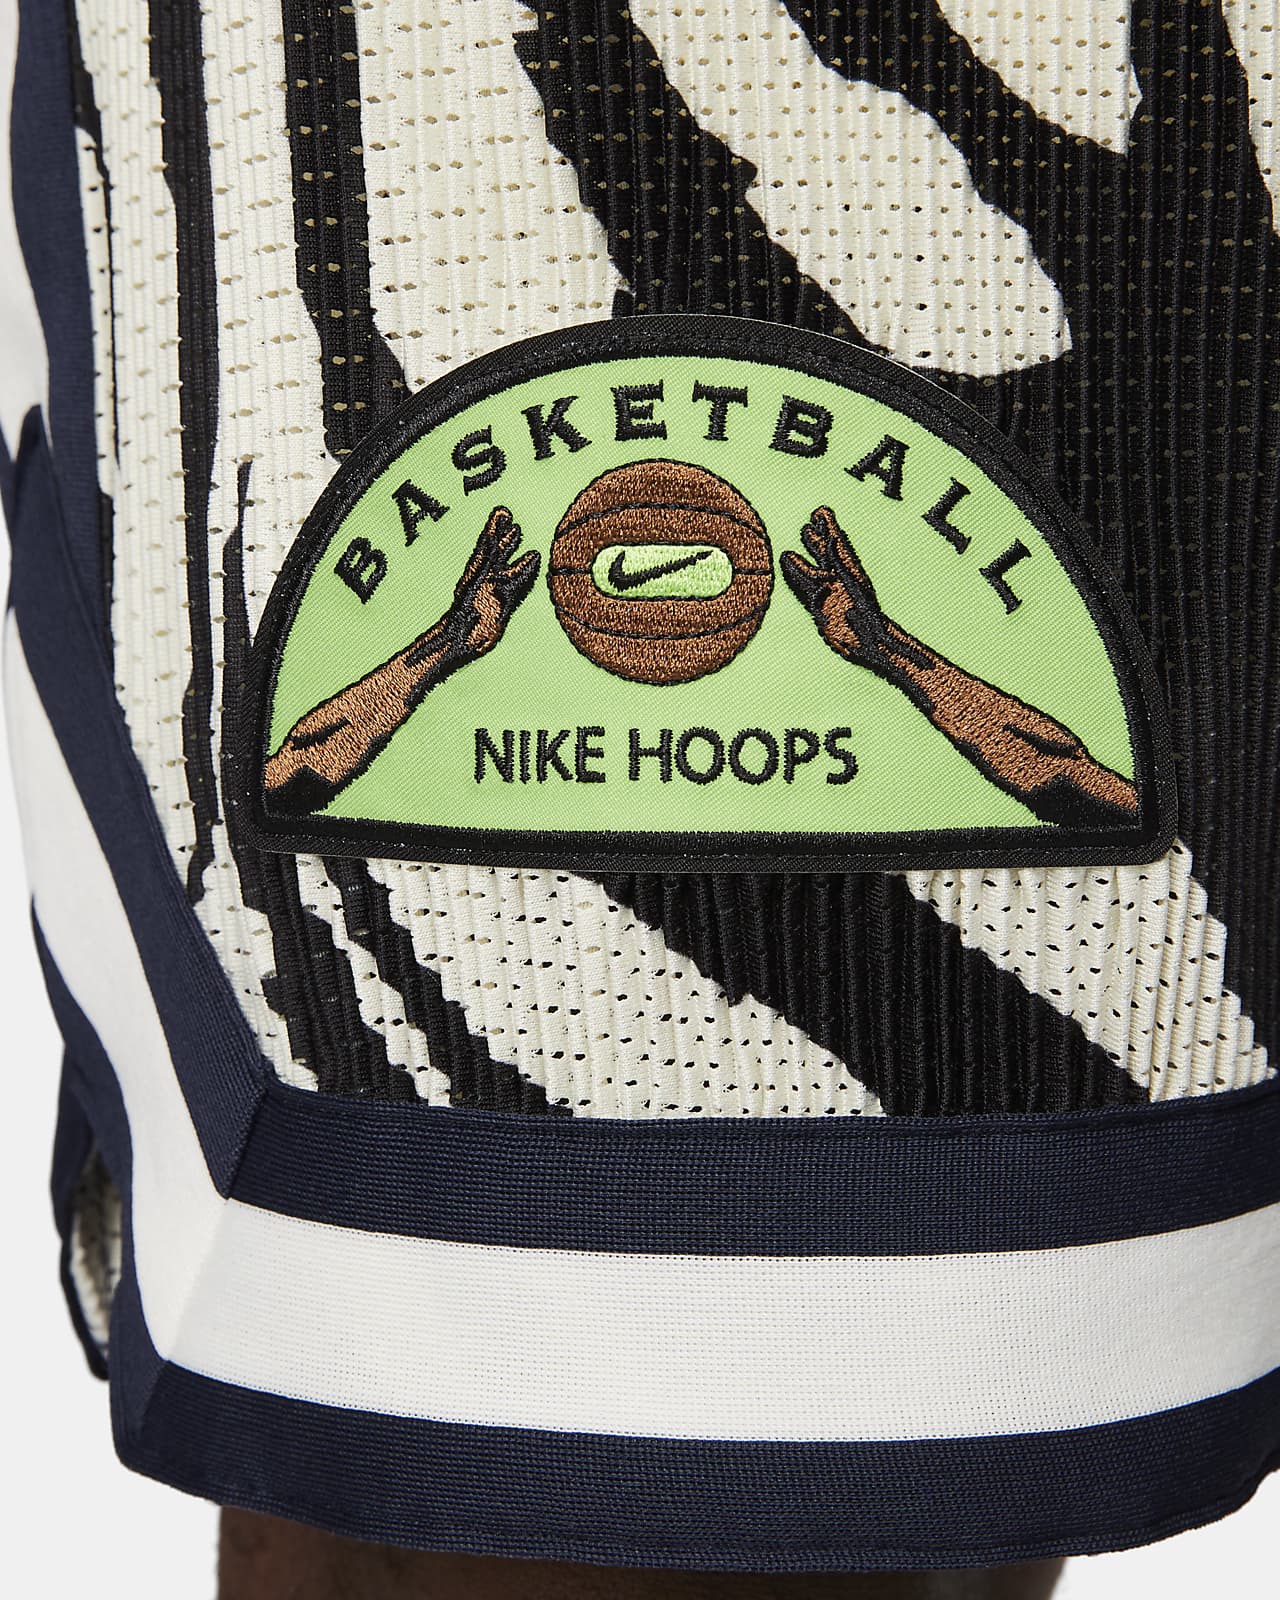 Nike Men's 8 Dri-Fit Icon Basketball Shorts, XL, Game Royal